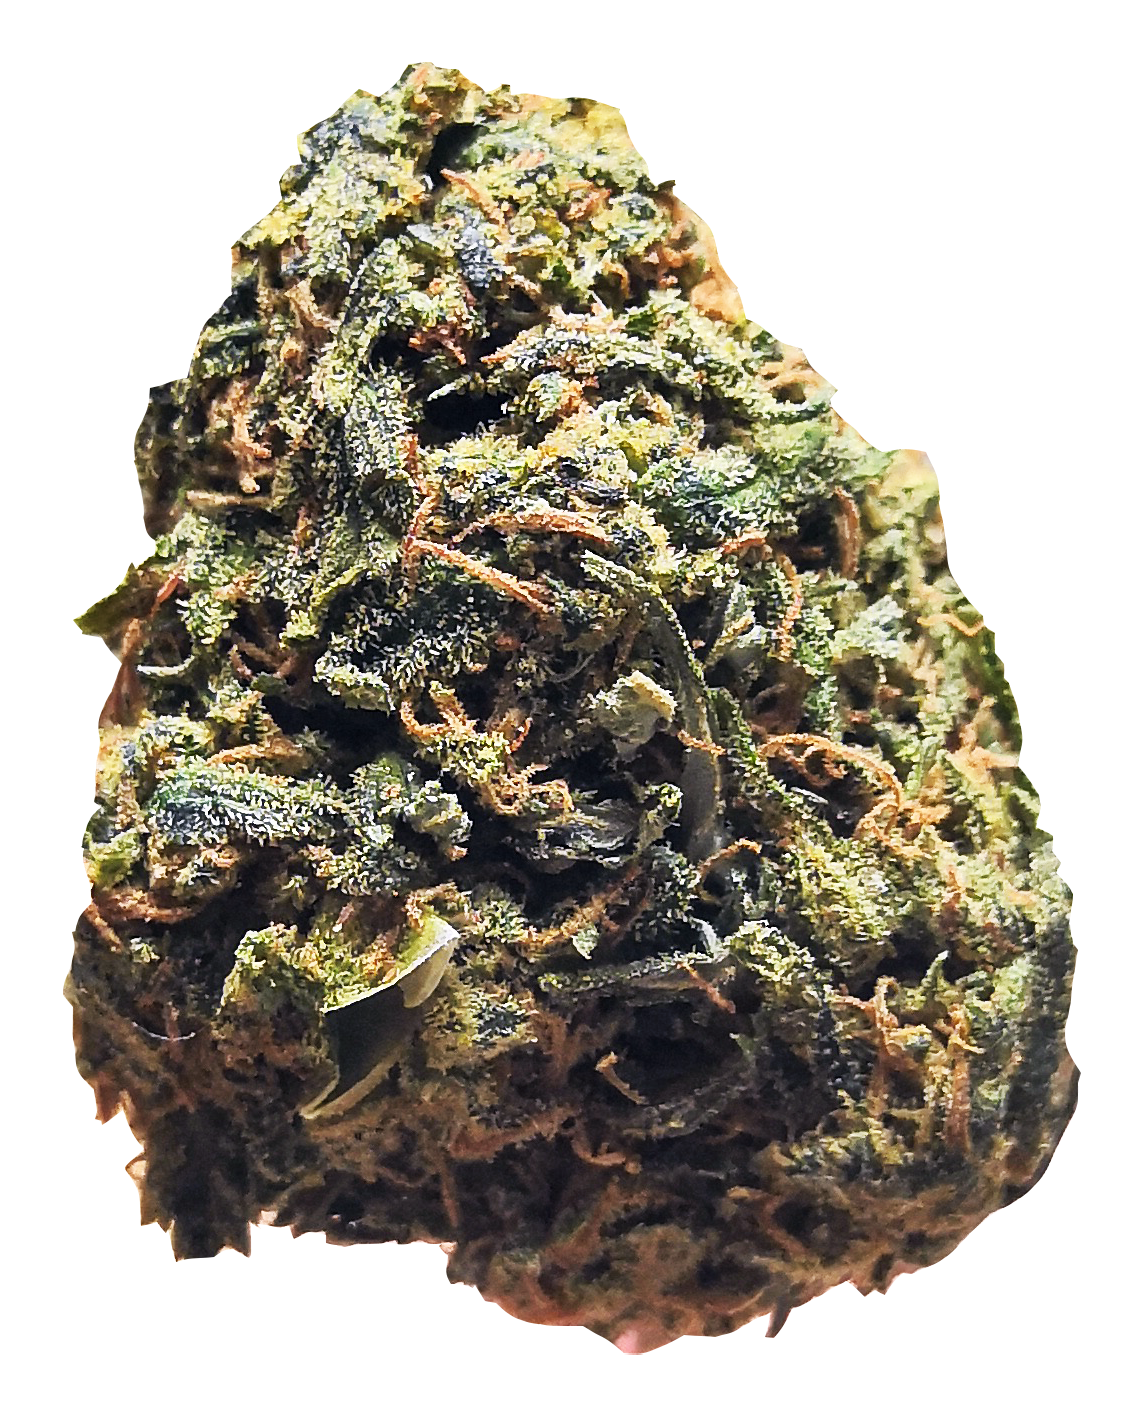 OG Kush - Cannabis Light | THC < 0.2% CBD > 25%